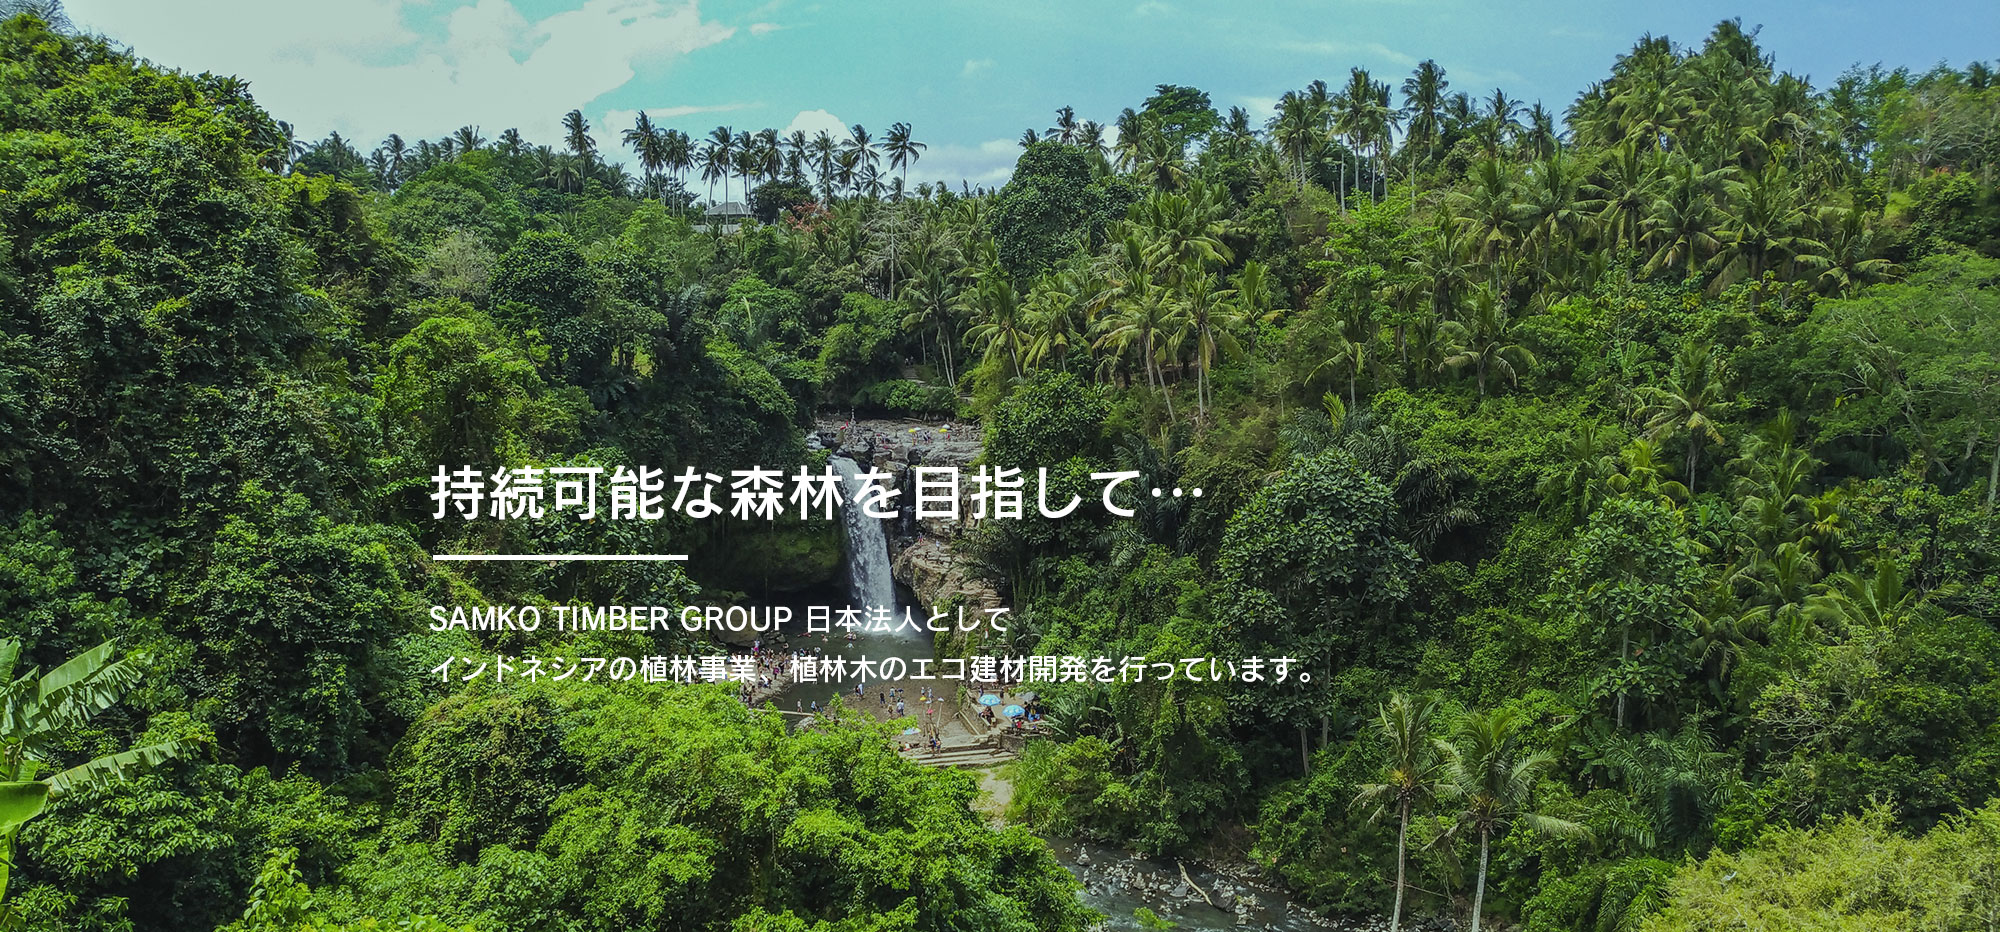 持続可能な森林を目指して…SAMKO TIMBER GROUP 日本法人としてインドネシアの植林事業、植林木のエコ建材開発を行っています。